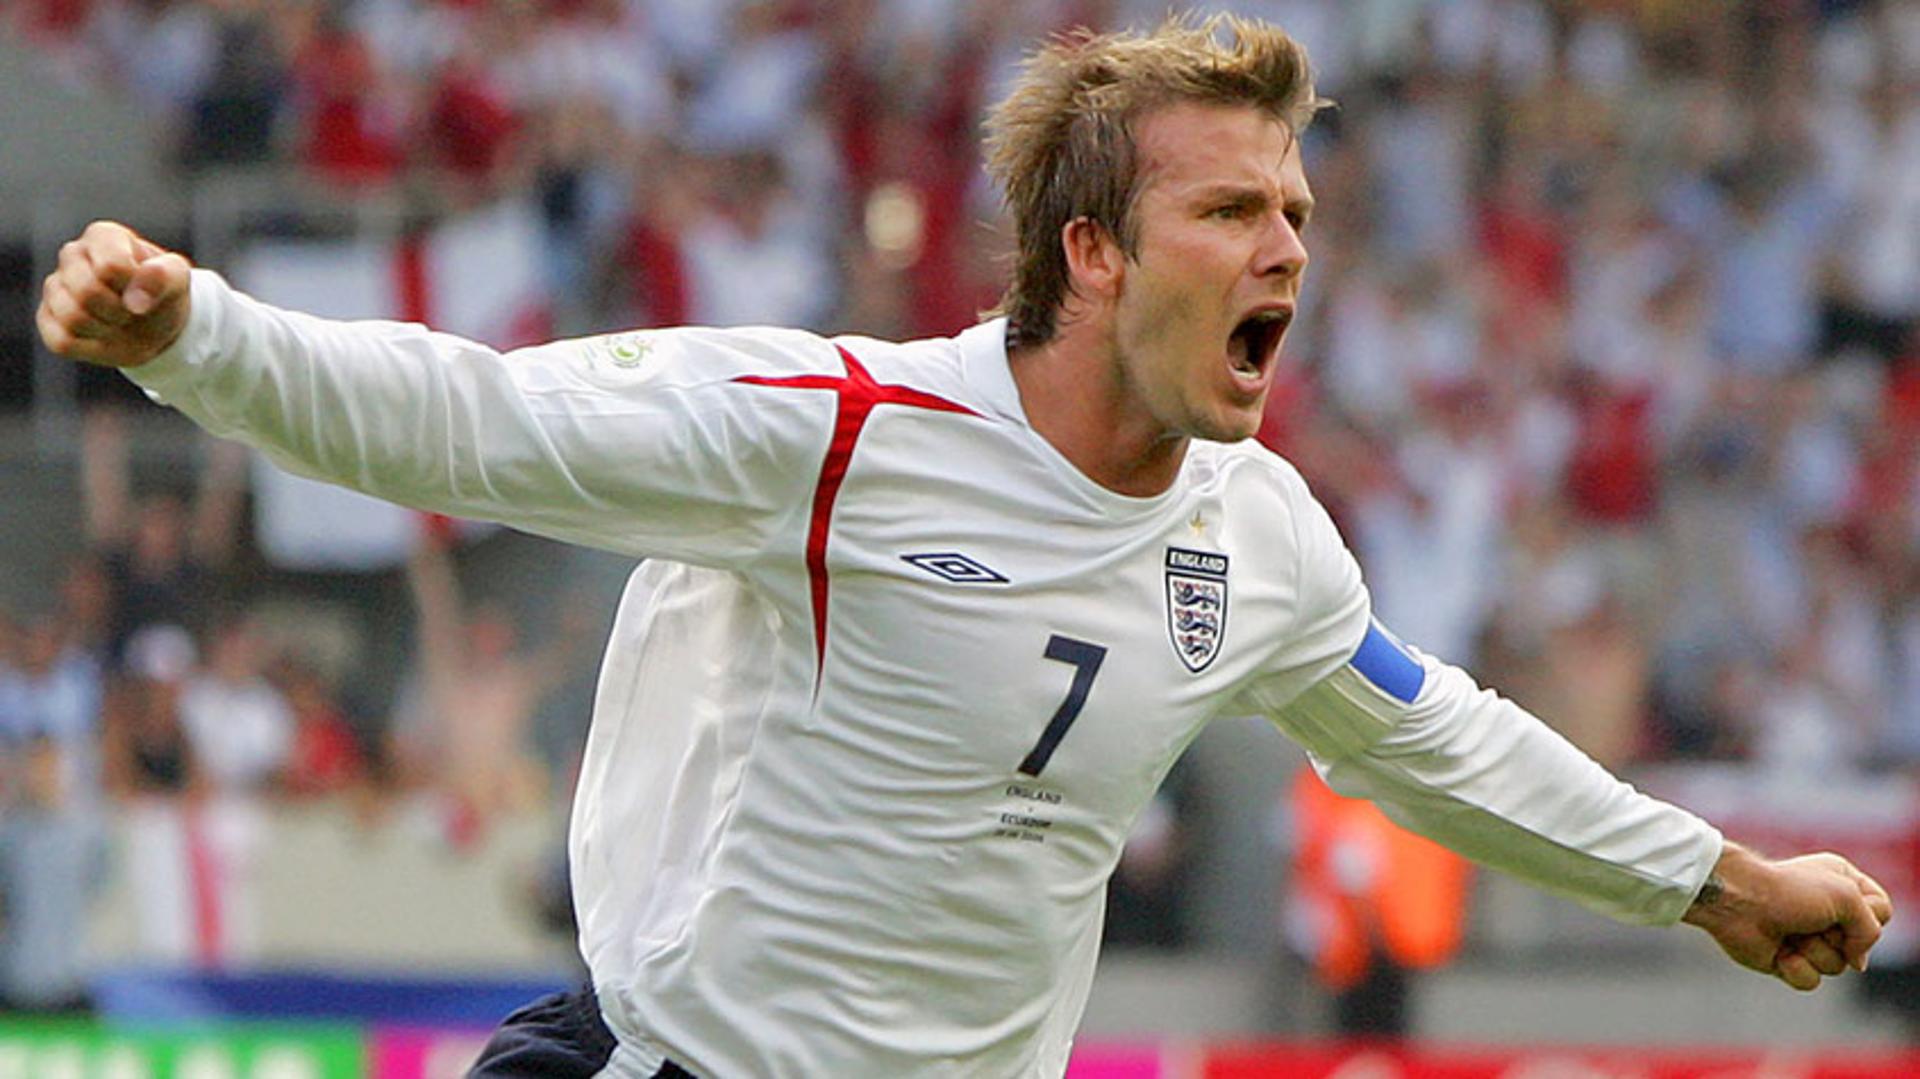 10. David Beckham (Inglaterra) - 2006<br>O astro inglês além de ídolo é conhecido por ser modelo&nbsp; e inspiração para os homens ingleses. Segundo a publicação, o corte de cabelo de Beckham em 2006 foi reproduzido por diversos homens por toda a Inglaterra, inclusive idosos.